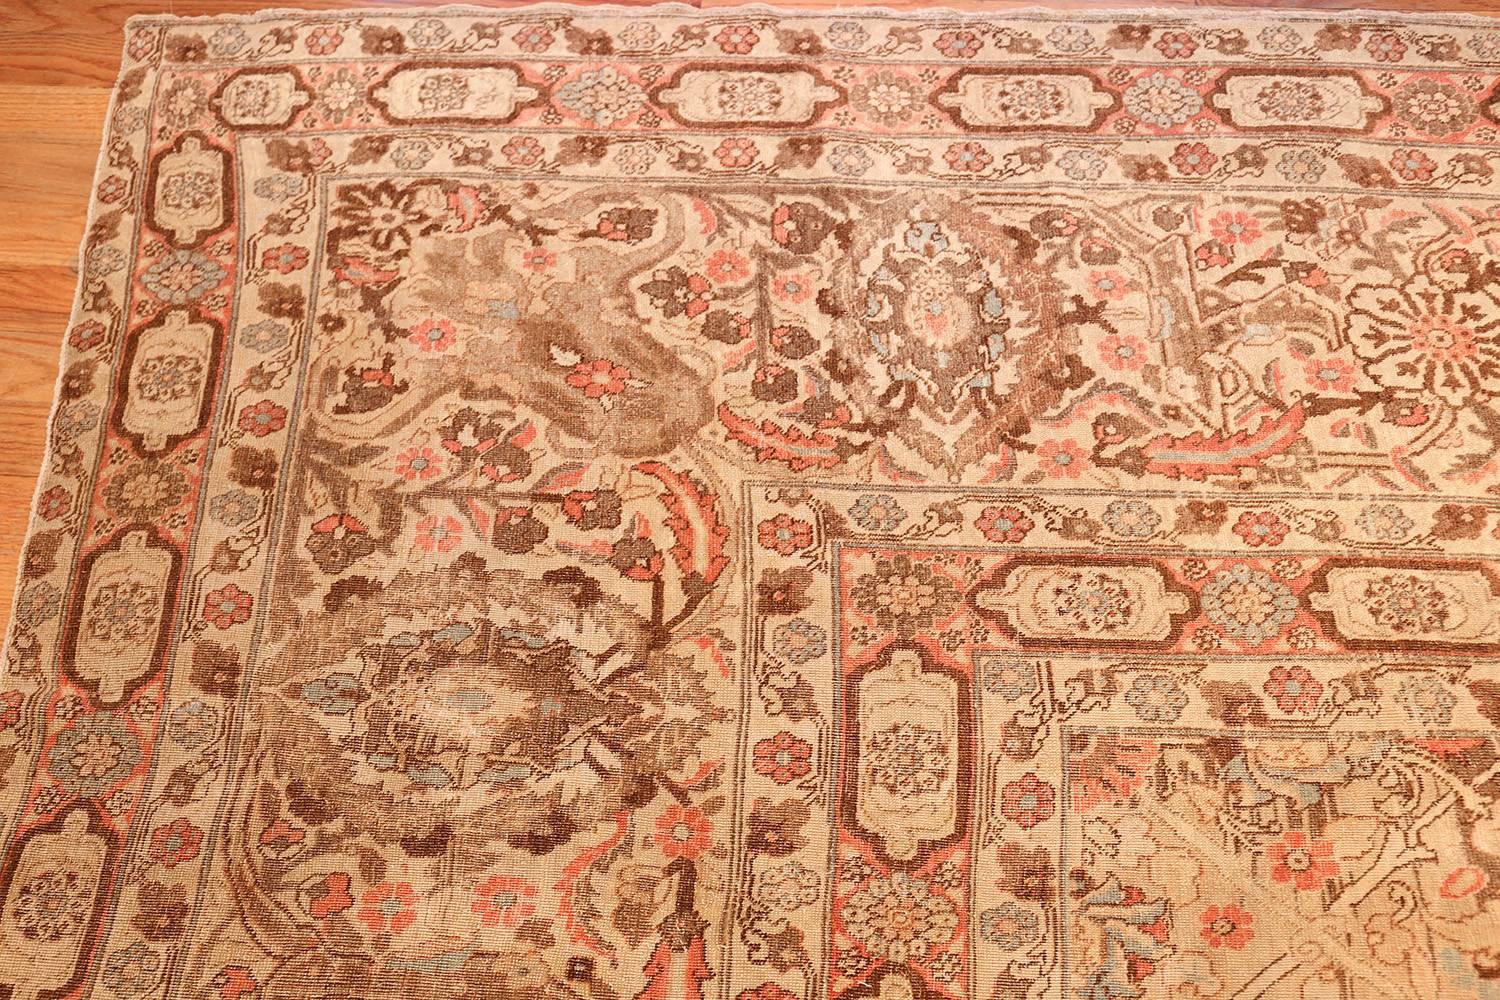 Antique Palace Size Tabriz Carpet, Country of Origin / Rug Type : Tapis persans, Circa date : 1900. Taille : 18 ft x 25 ft (5,49 m x 7,62 m)

Les pétales et les fougères qui s'écoulent créent un mouvement dans ce tapis Tabriz détaillé et